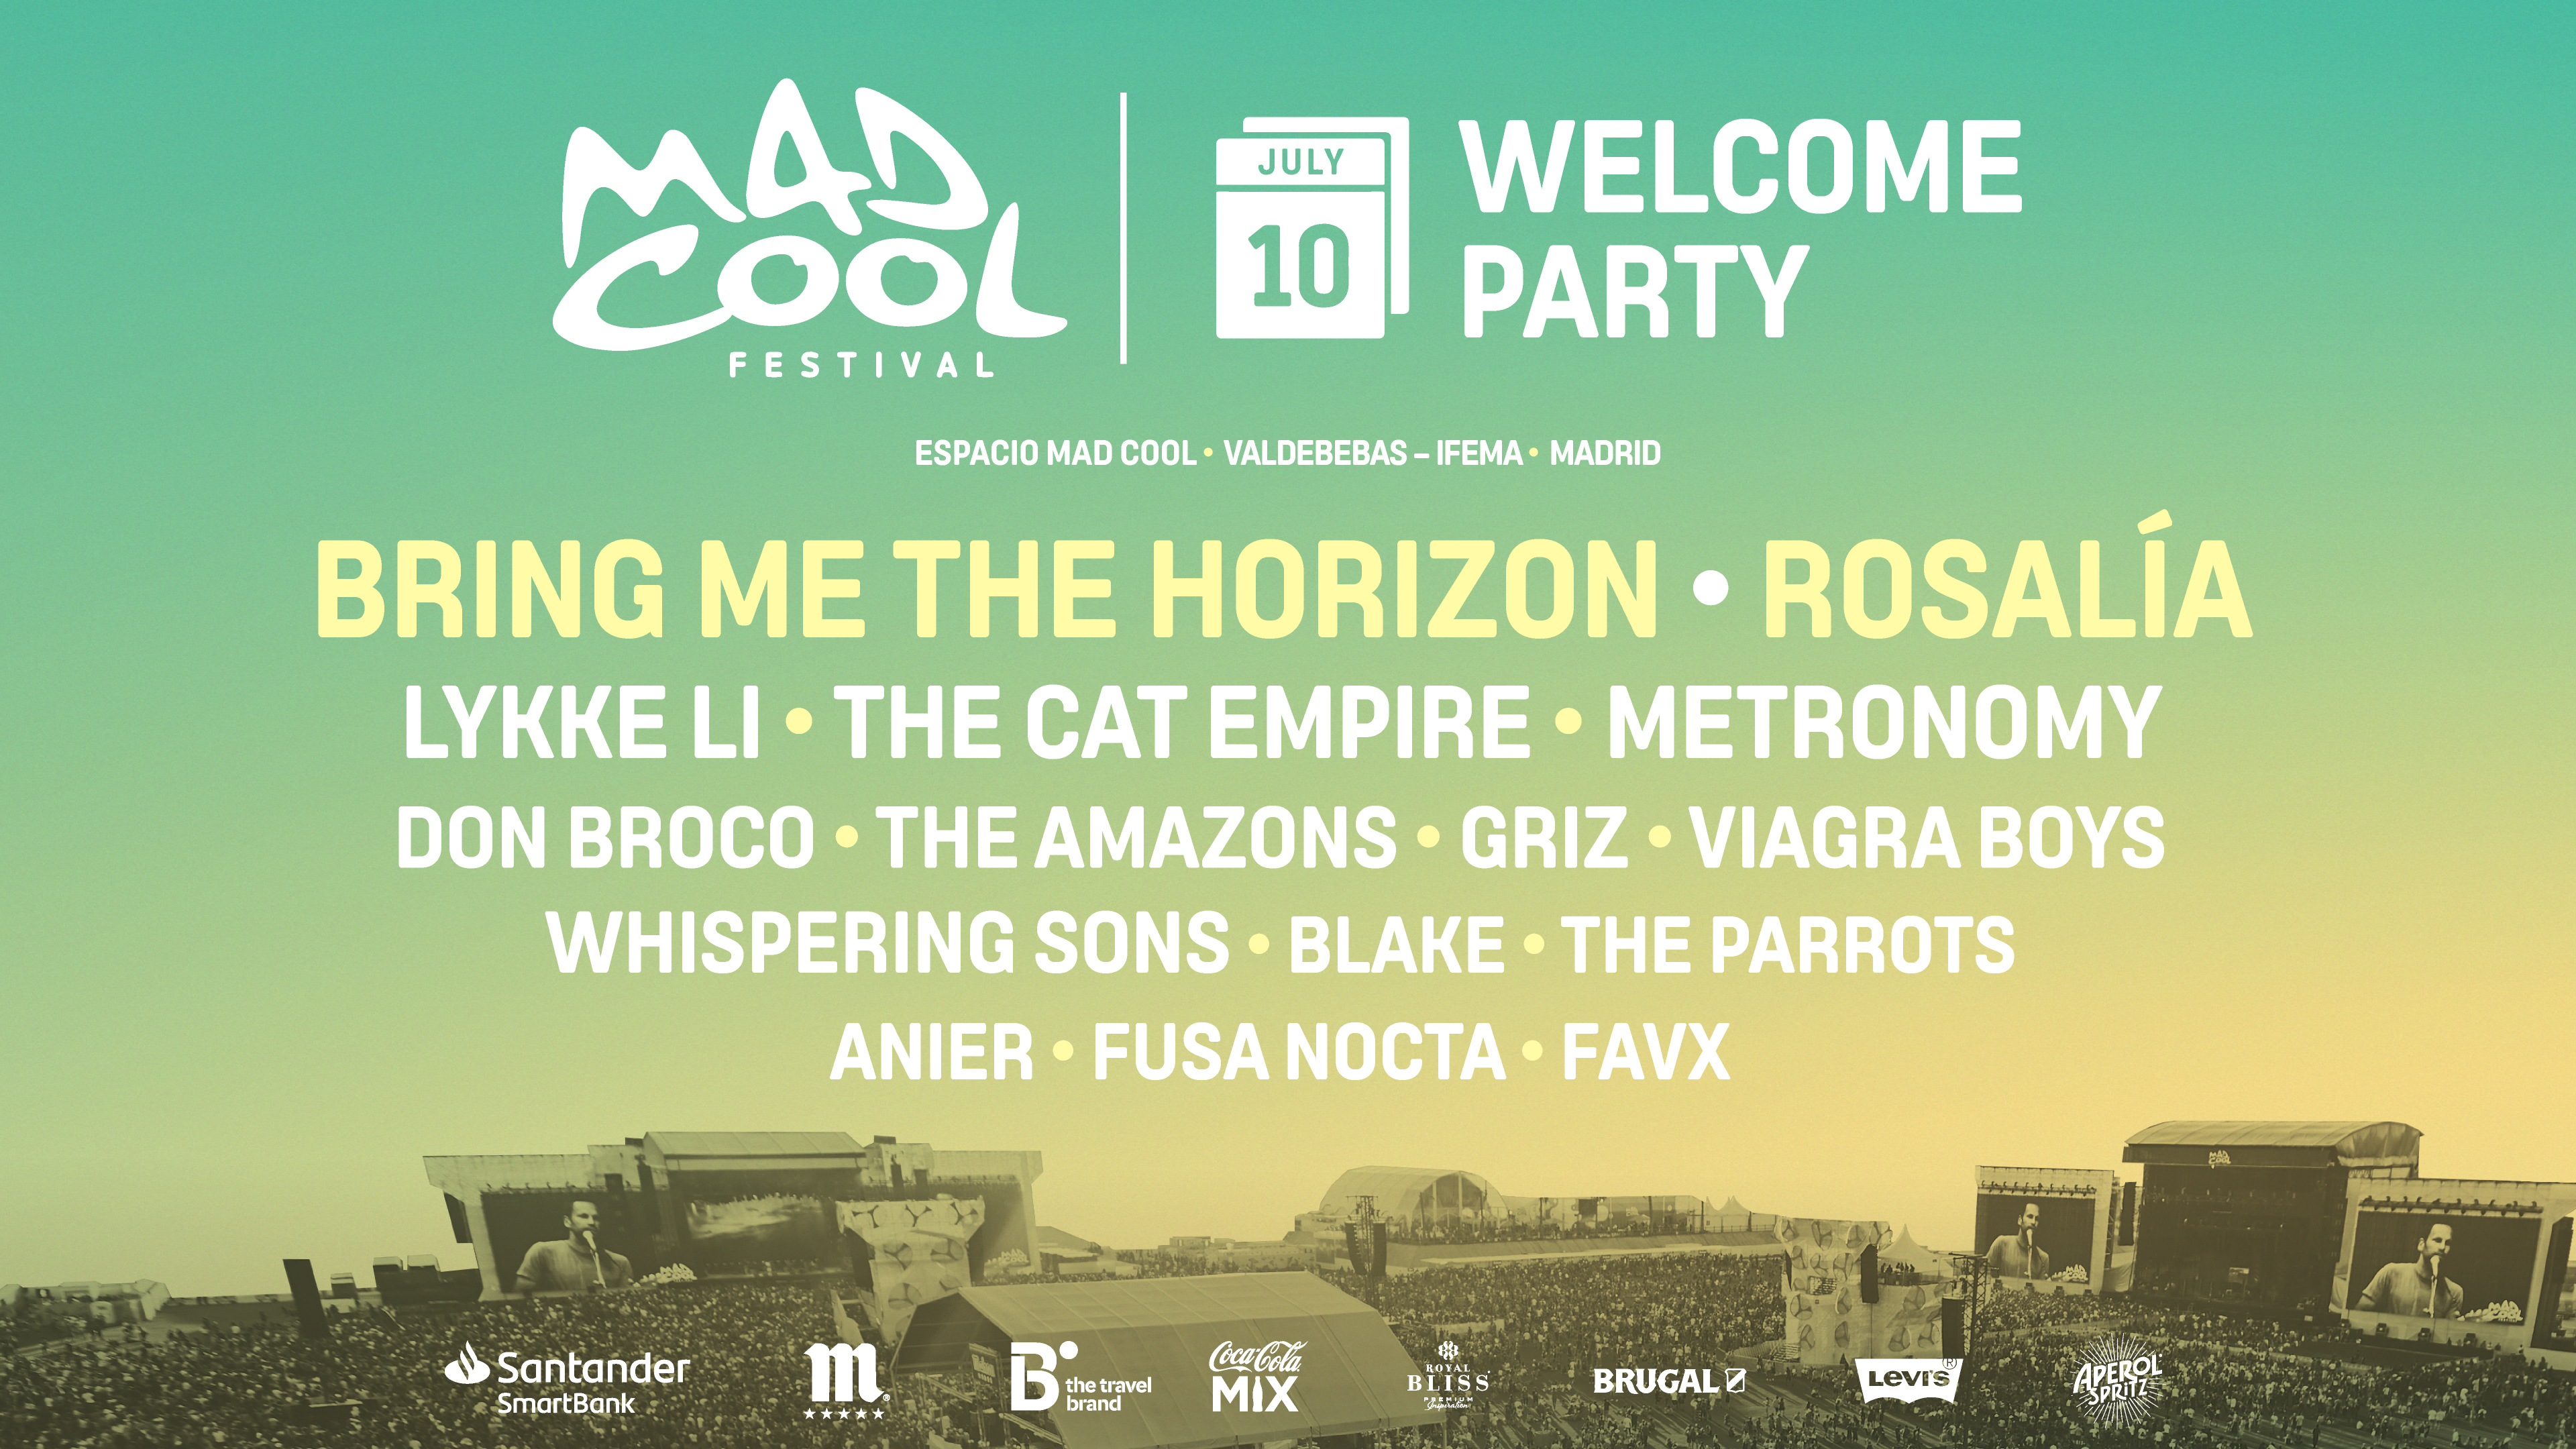 Descubre todas las novedades (y sorpresas) de la Welcome Party de Mad Cool Festival 2019